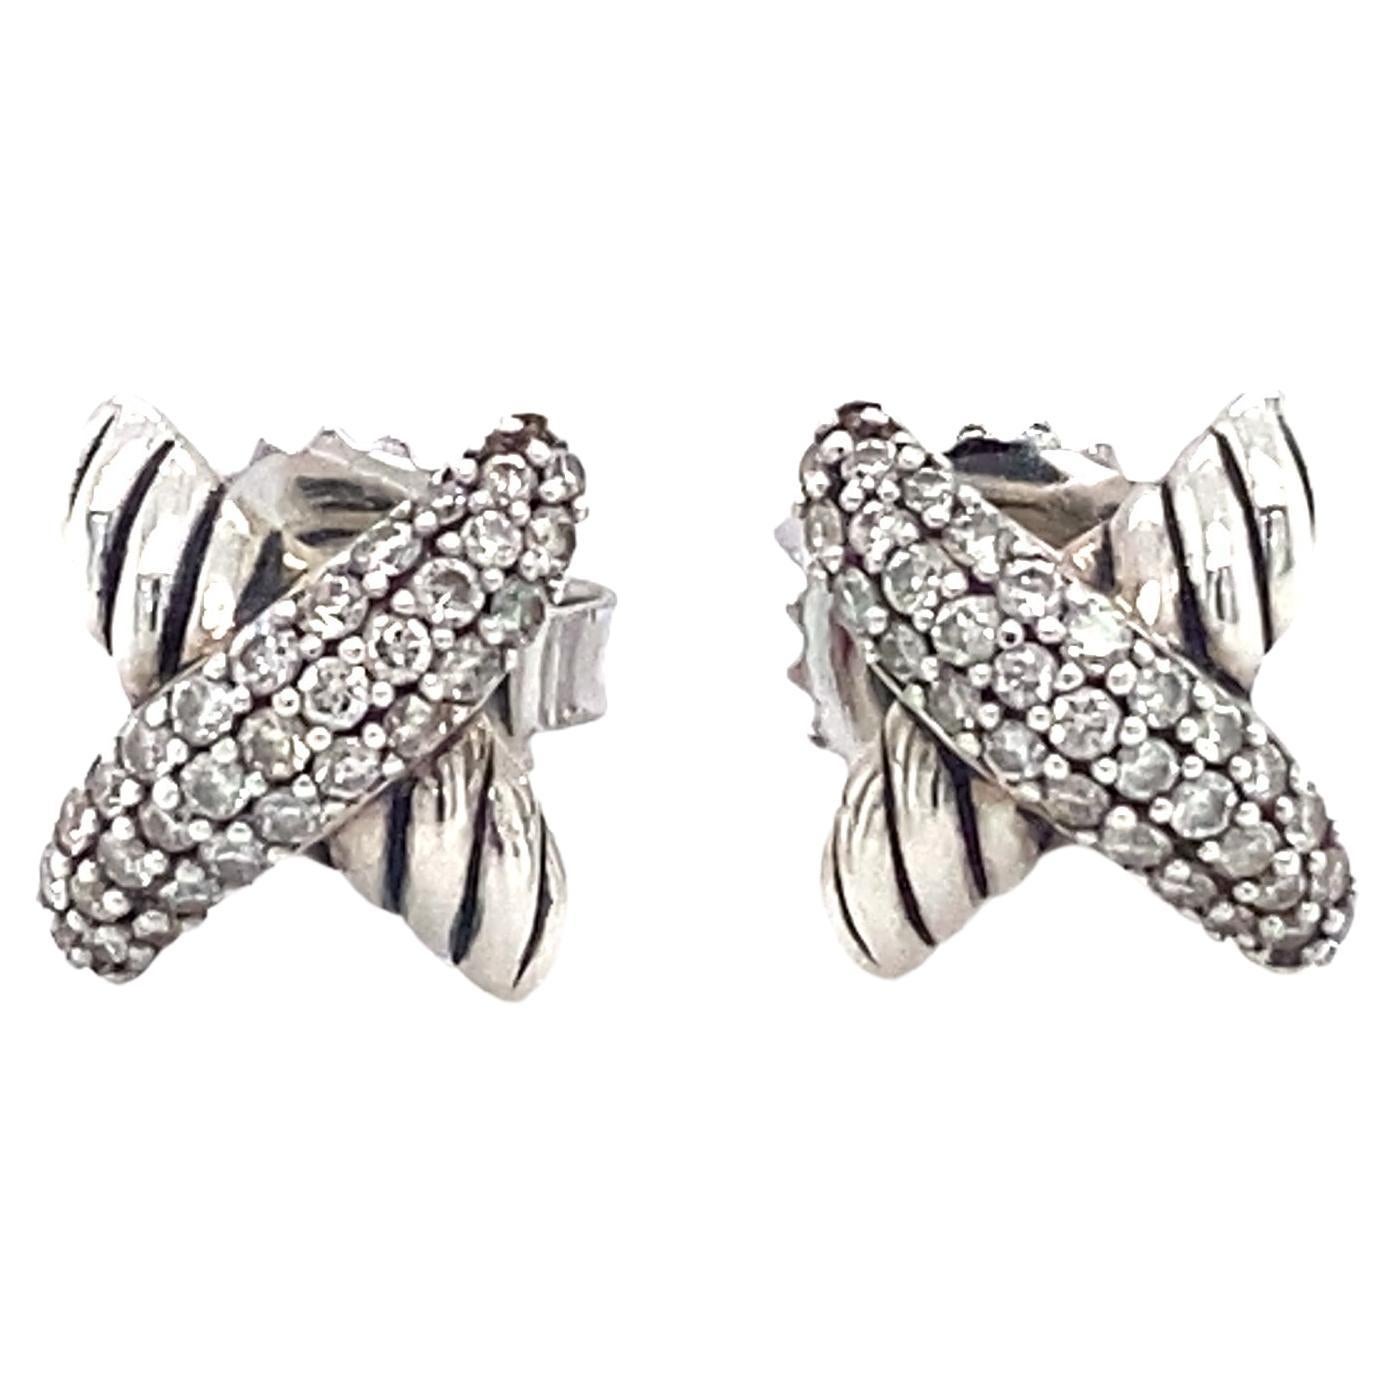 DAVID YURMAN X Stud Earrings with Diamonds in Sterling Silver